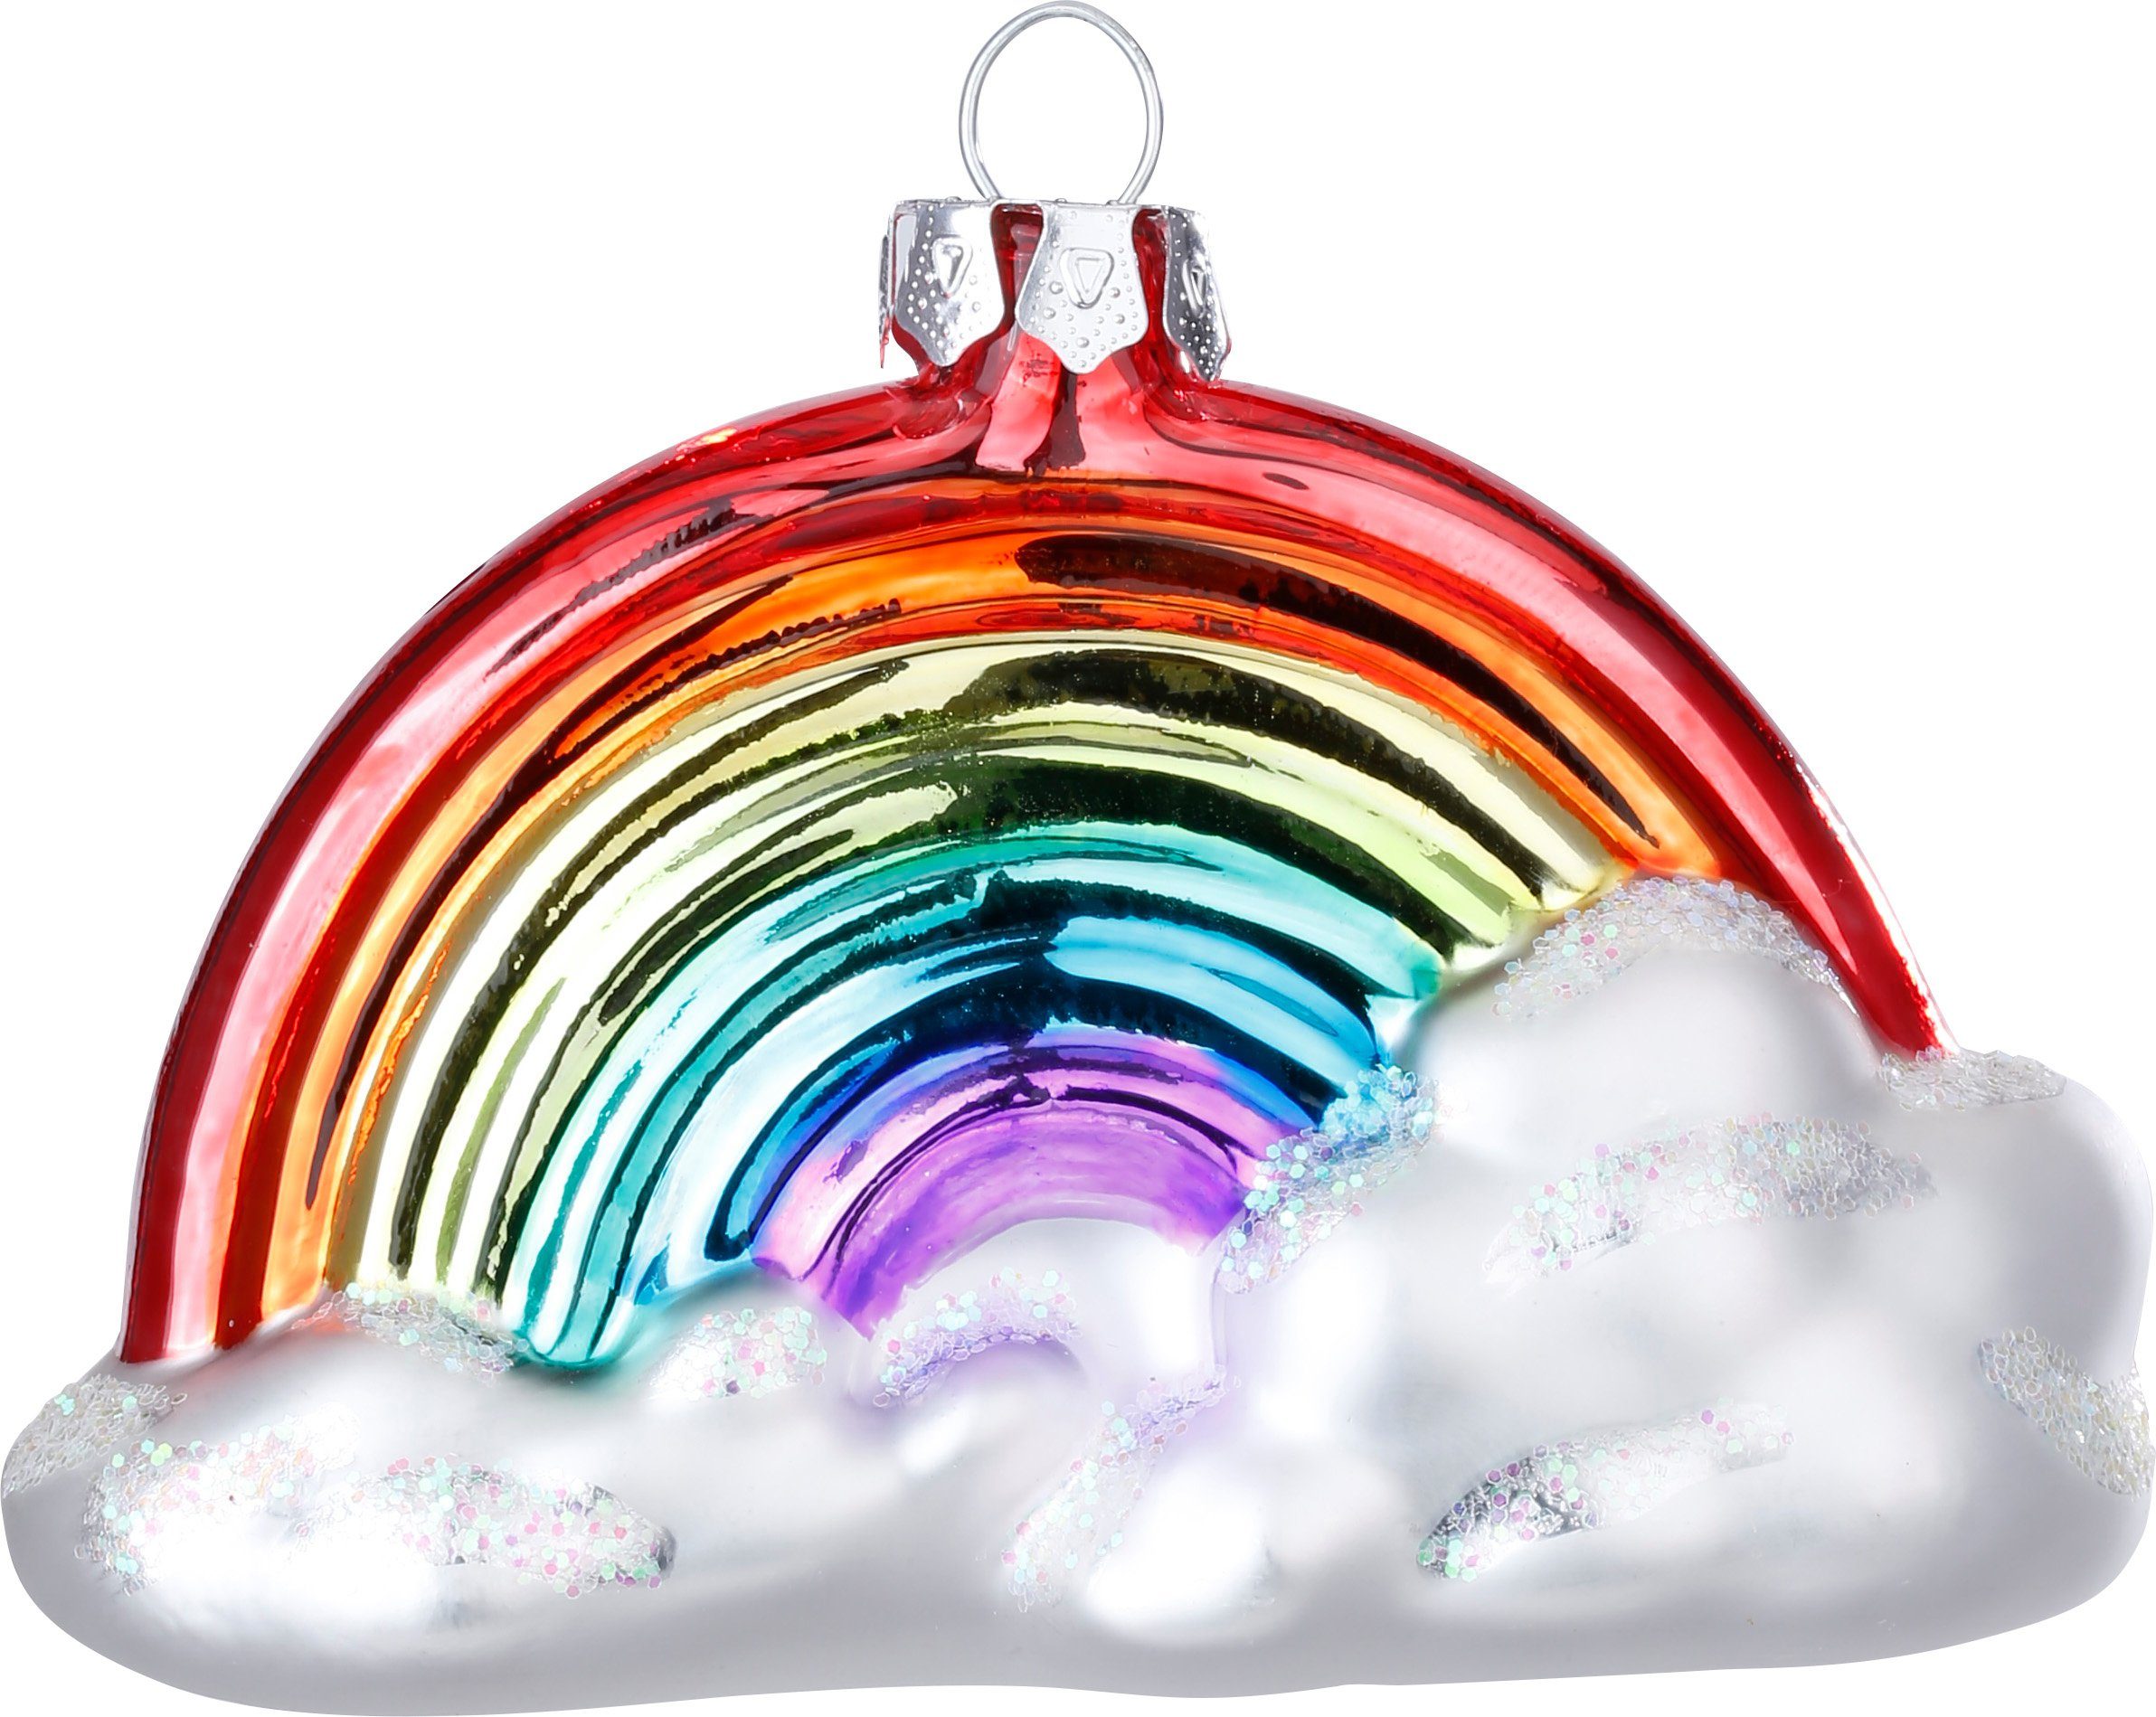 10cm MAGIC by Inge Christbaumschmuck, Christbaumschmuck bunt mit Glas Regenbogen Wolke